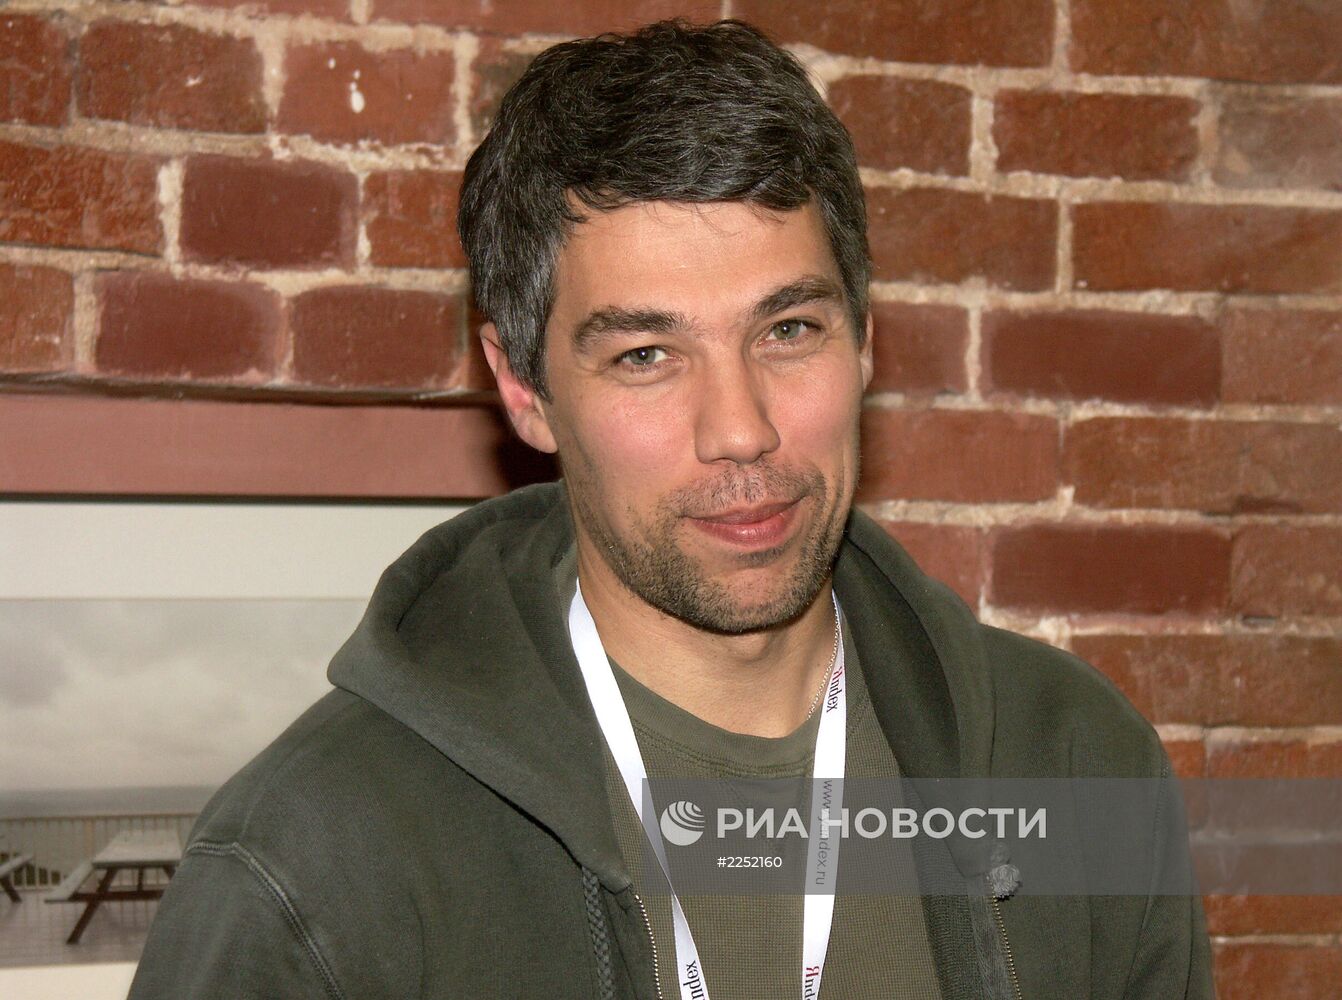 Один из основателей "Яндекс" И.Сегалович находится в коме